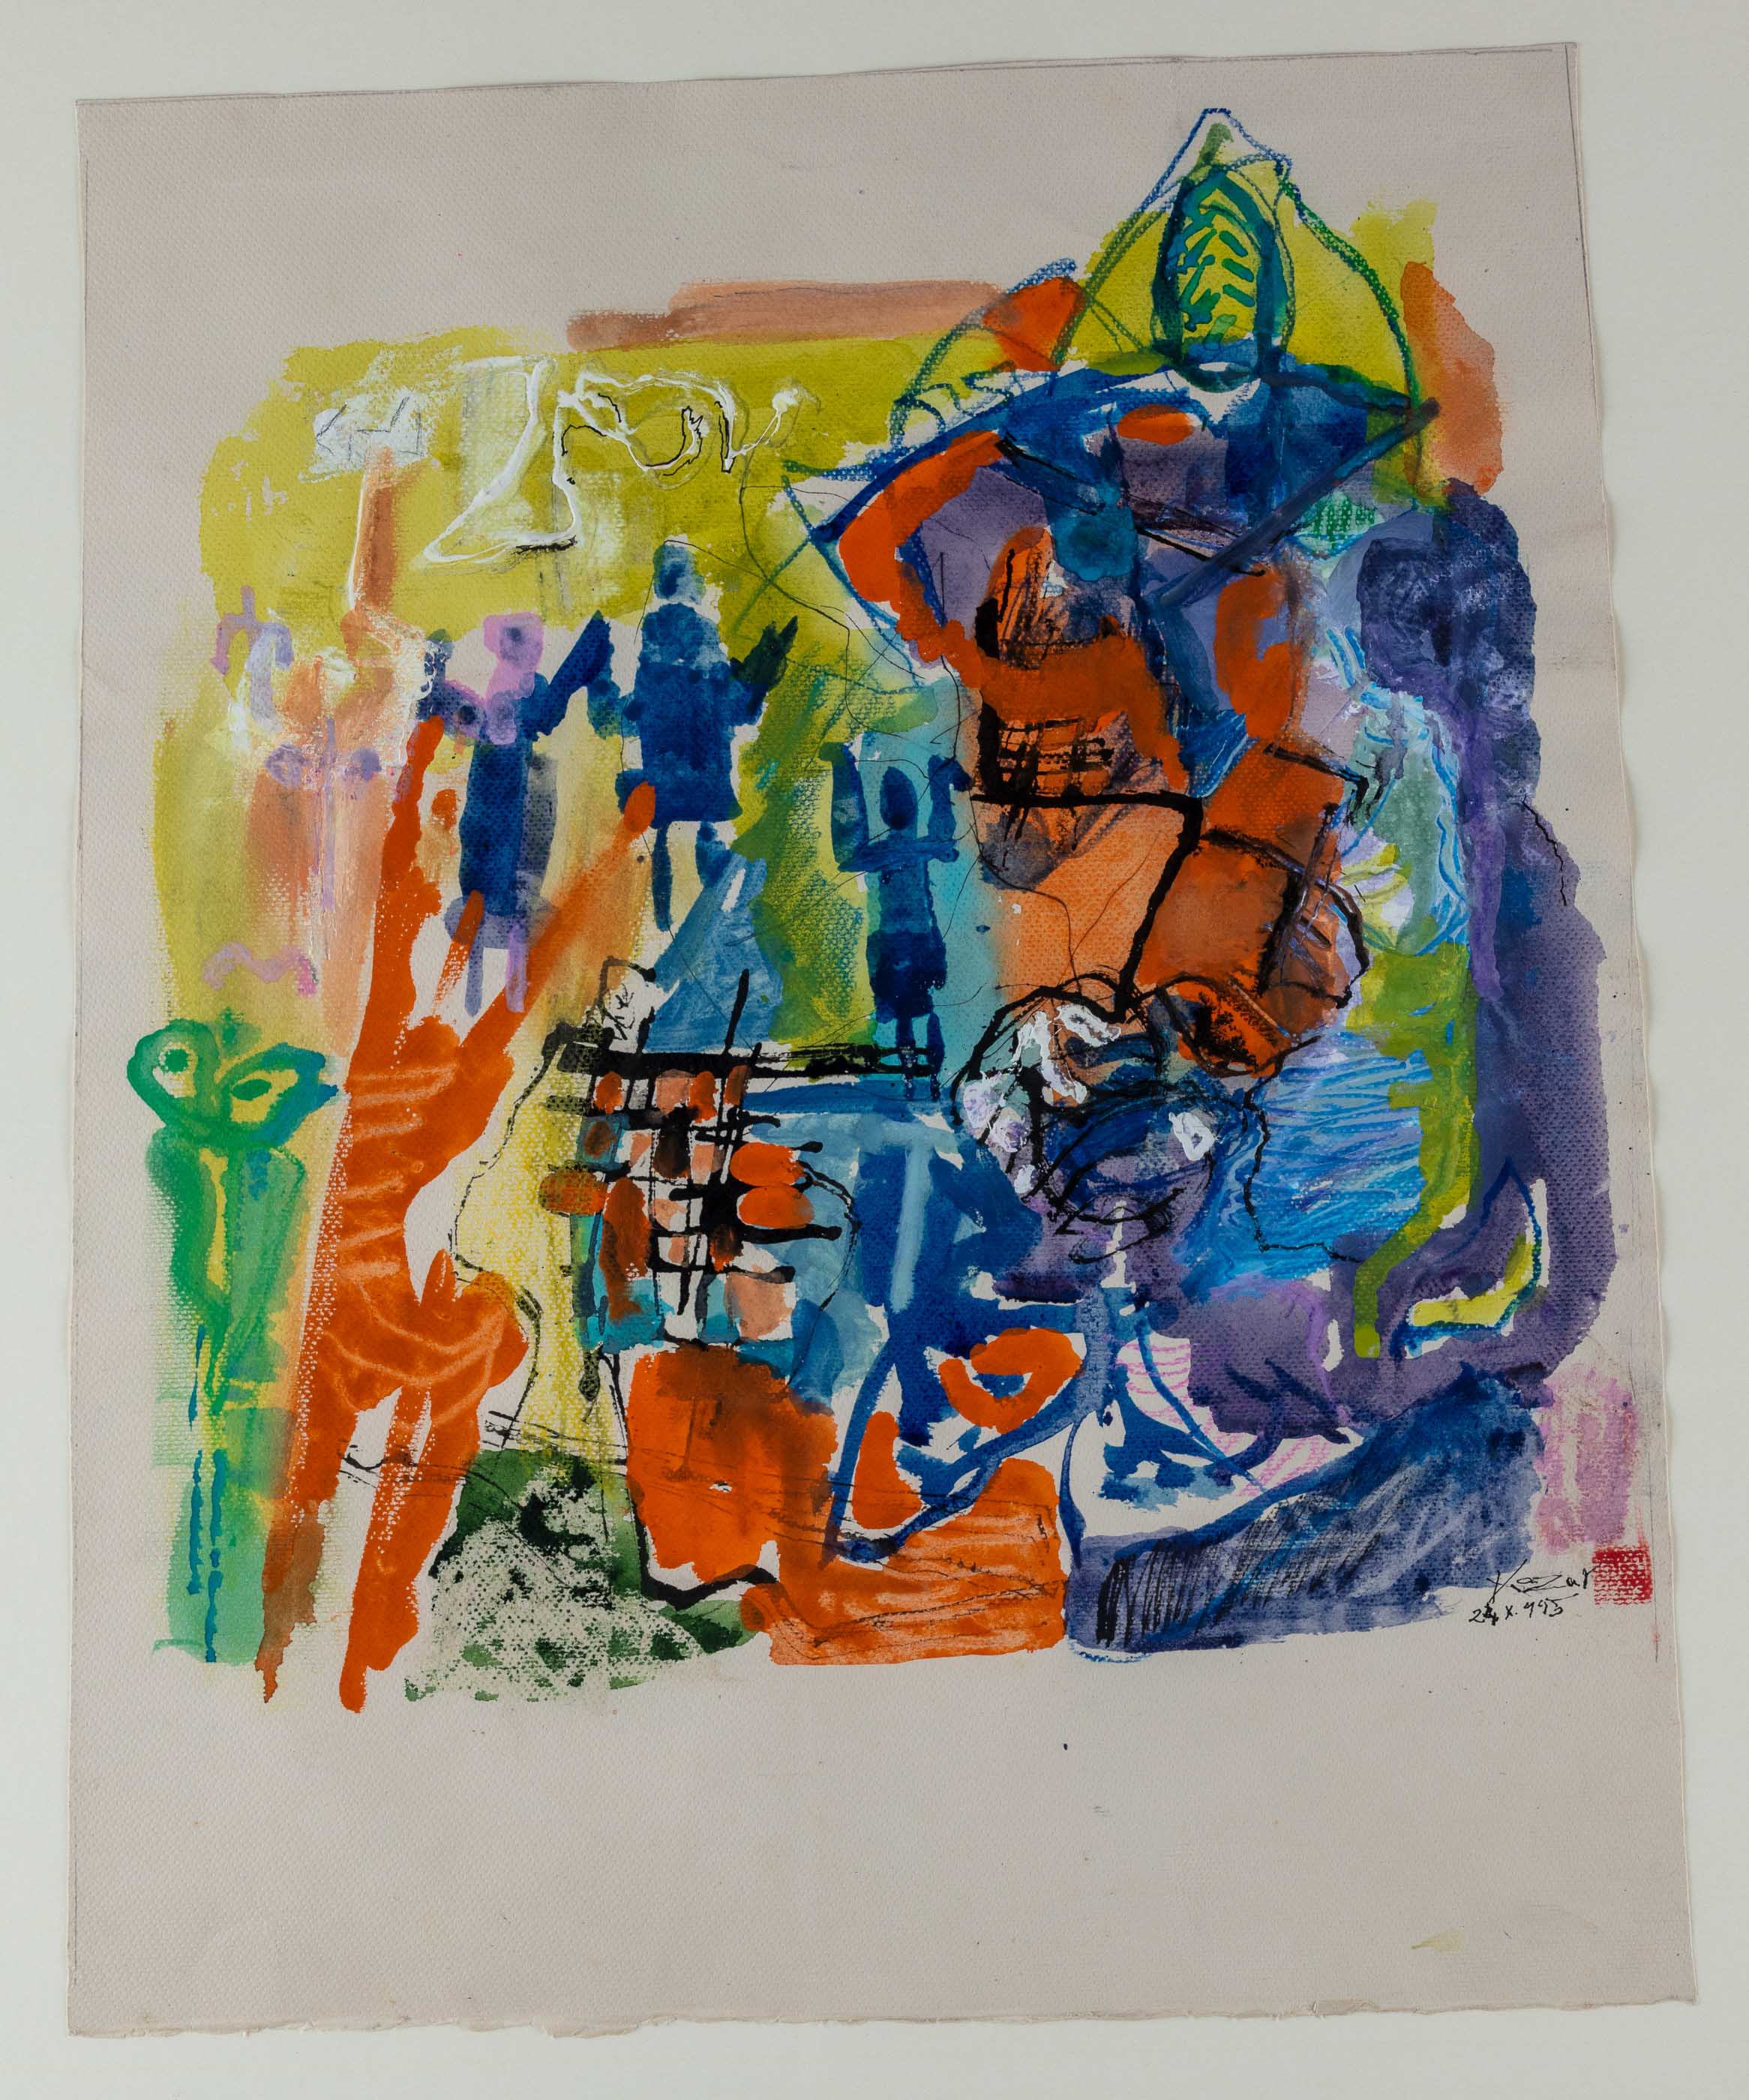 Composition 2, 1995